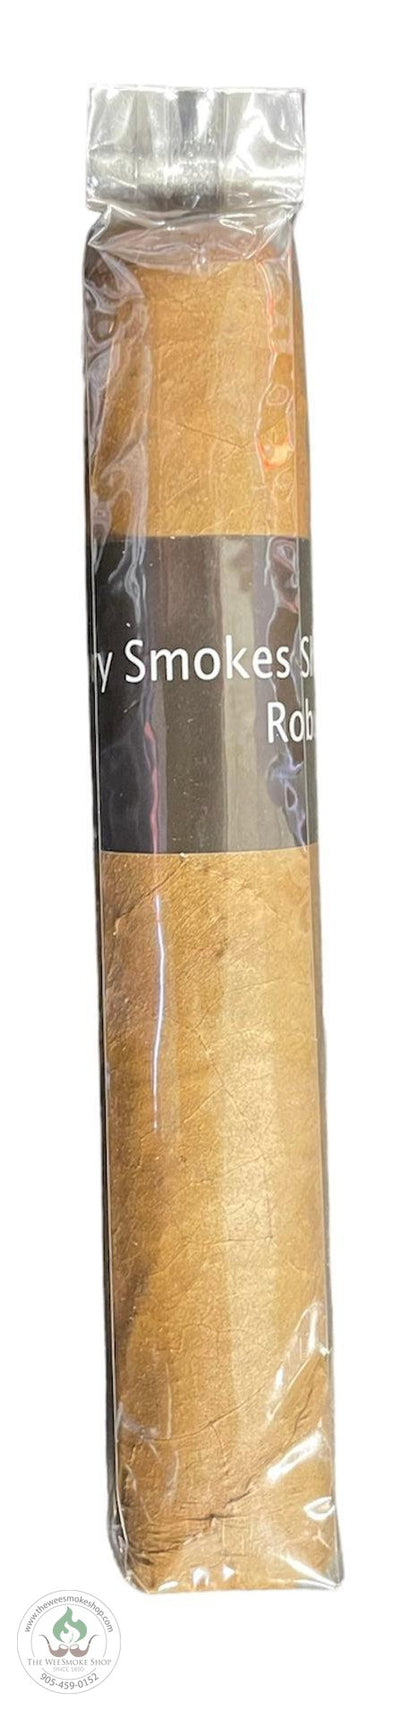 Factory Smokes Shade - Robusto - The Wee Smoke Shop